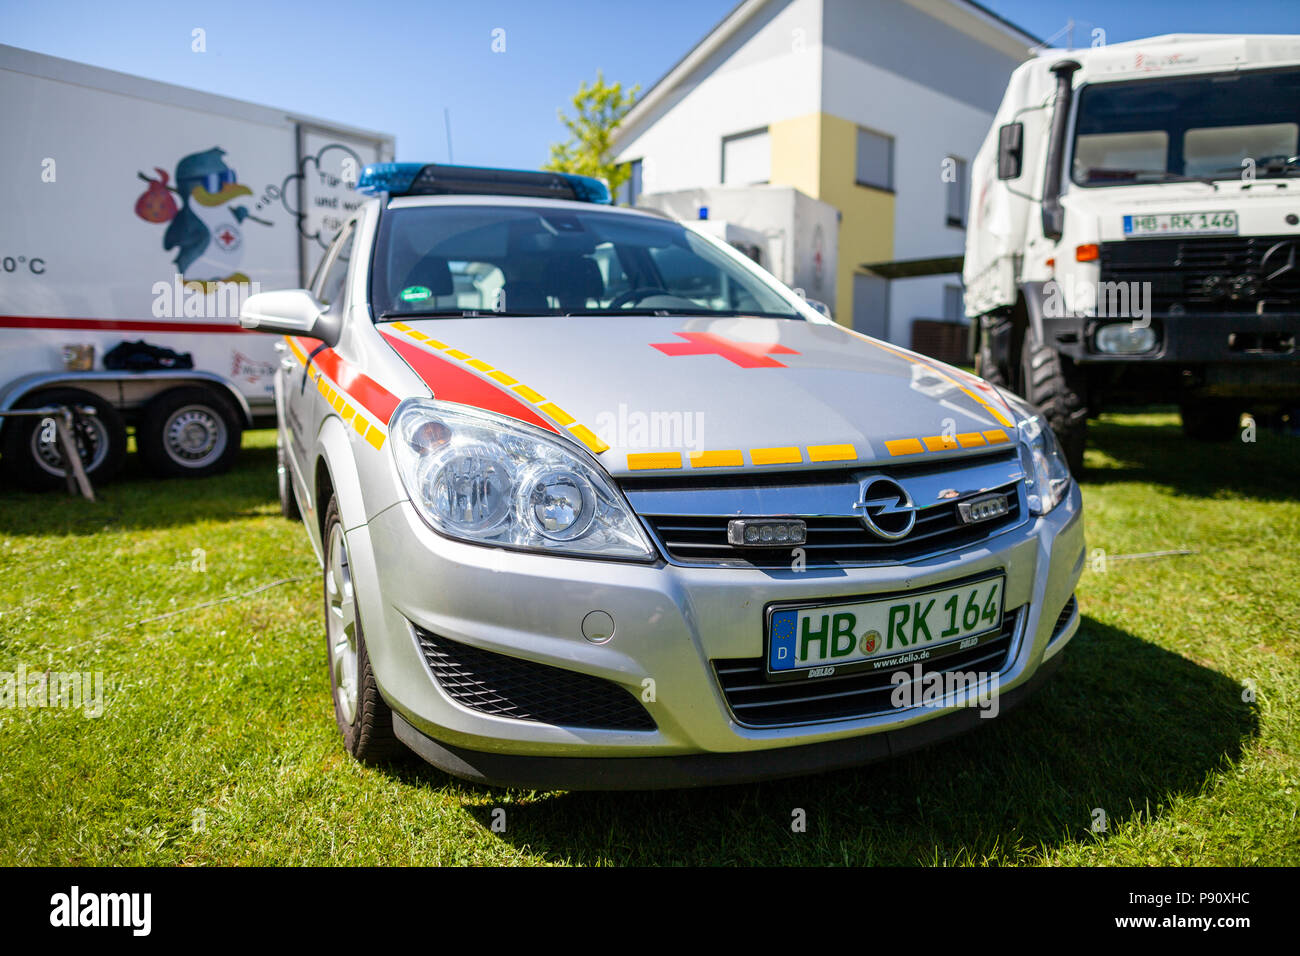 DELMENHORST / Germania - 6 Maggio 2018: Tedesco medico di emergenza auto dal Deutsches Rotes Kreuz sorge su un open day. Foto Stock